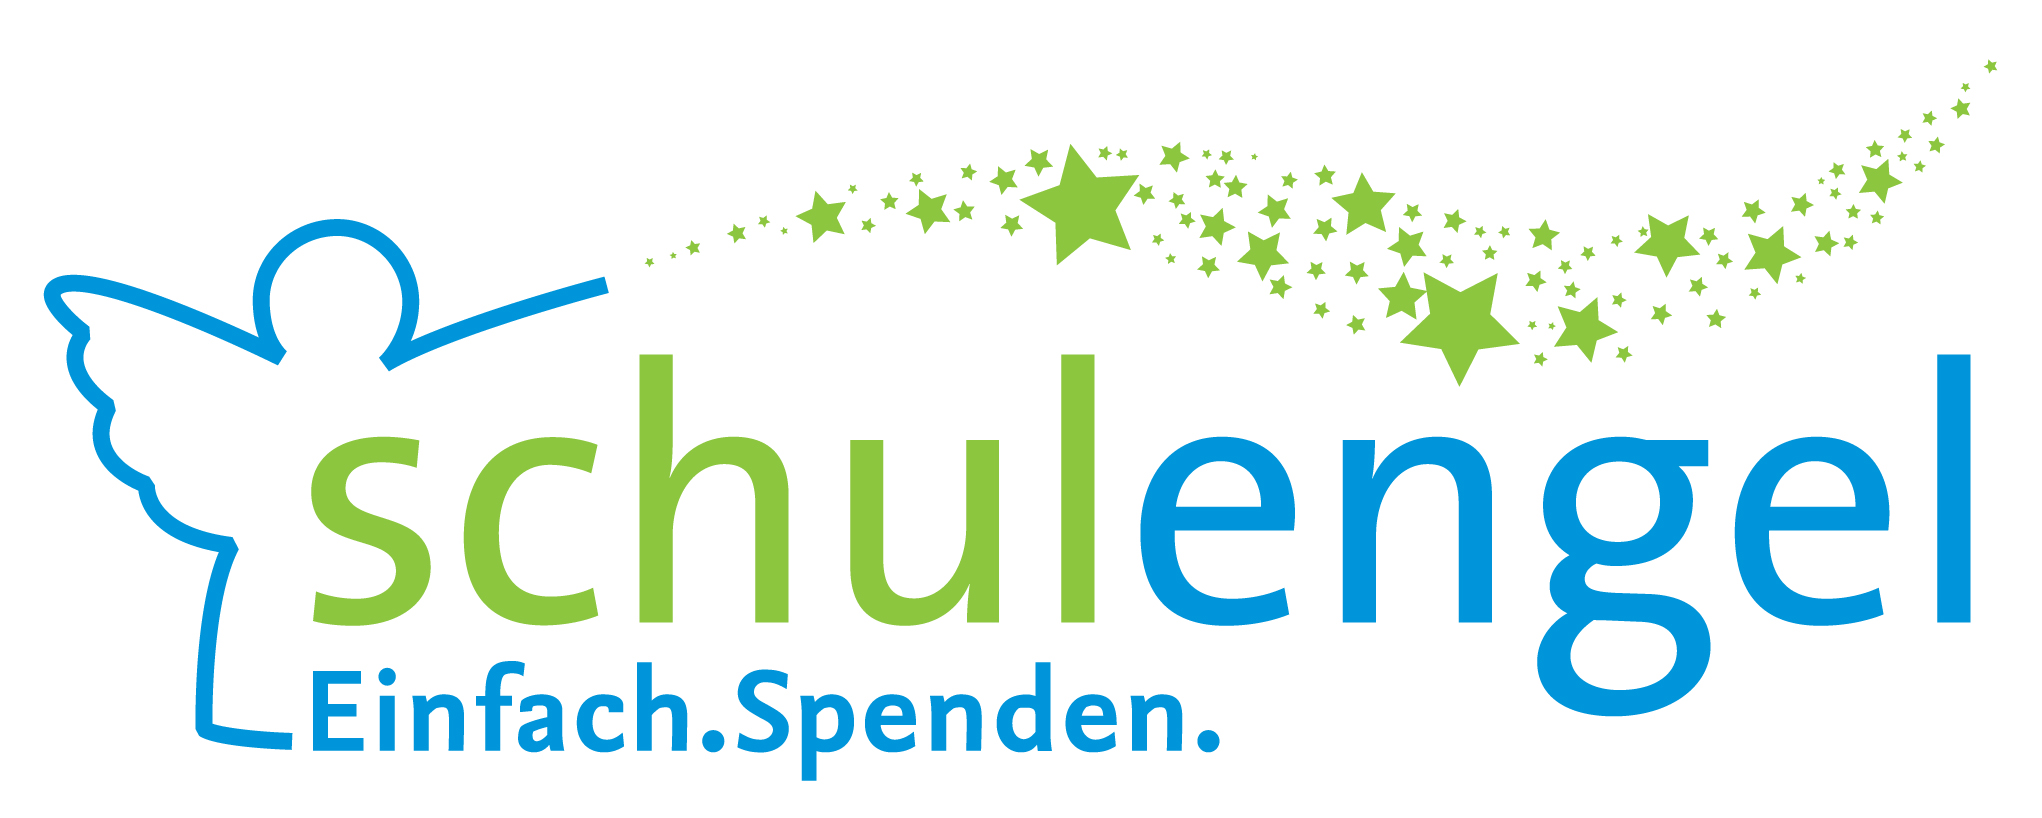 Schulengel-Logo-JPG.jpg